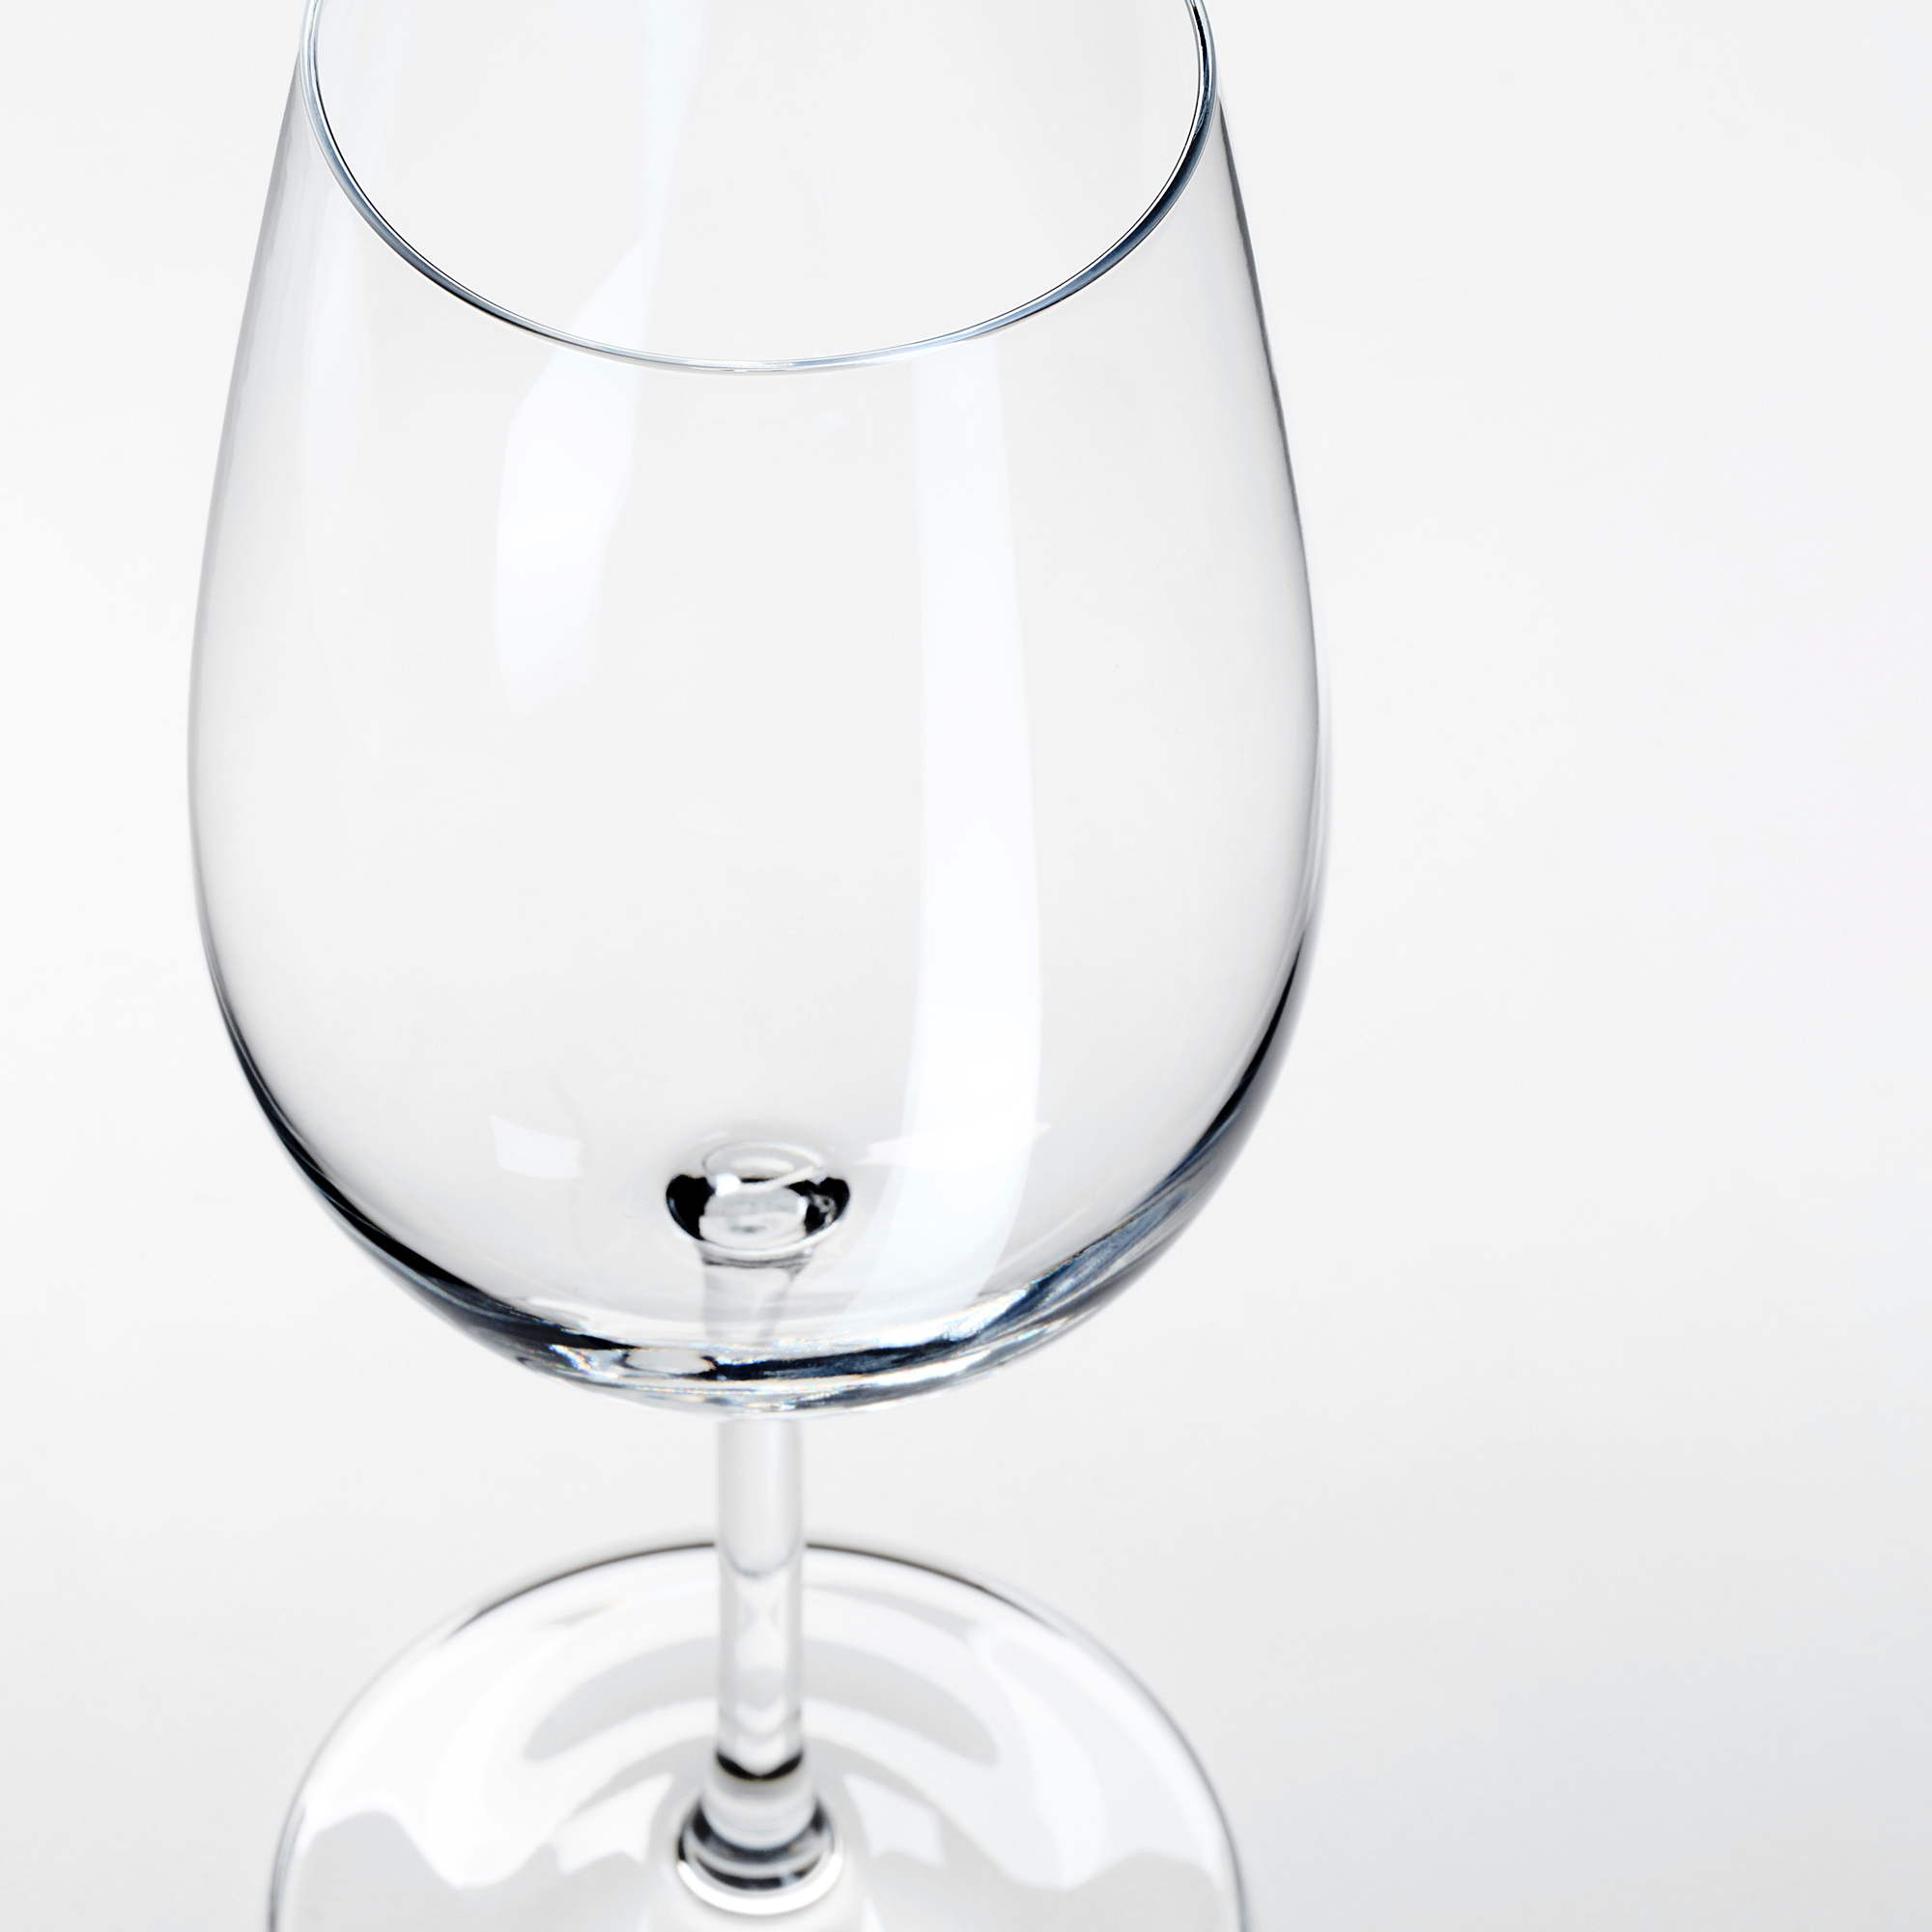 STORSINT wine glass